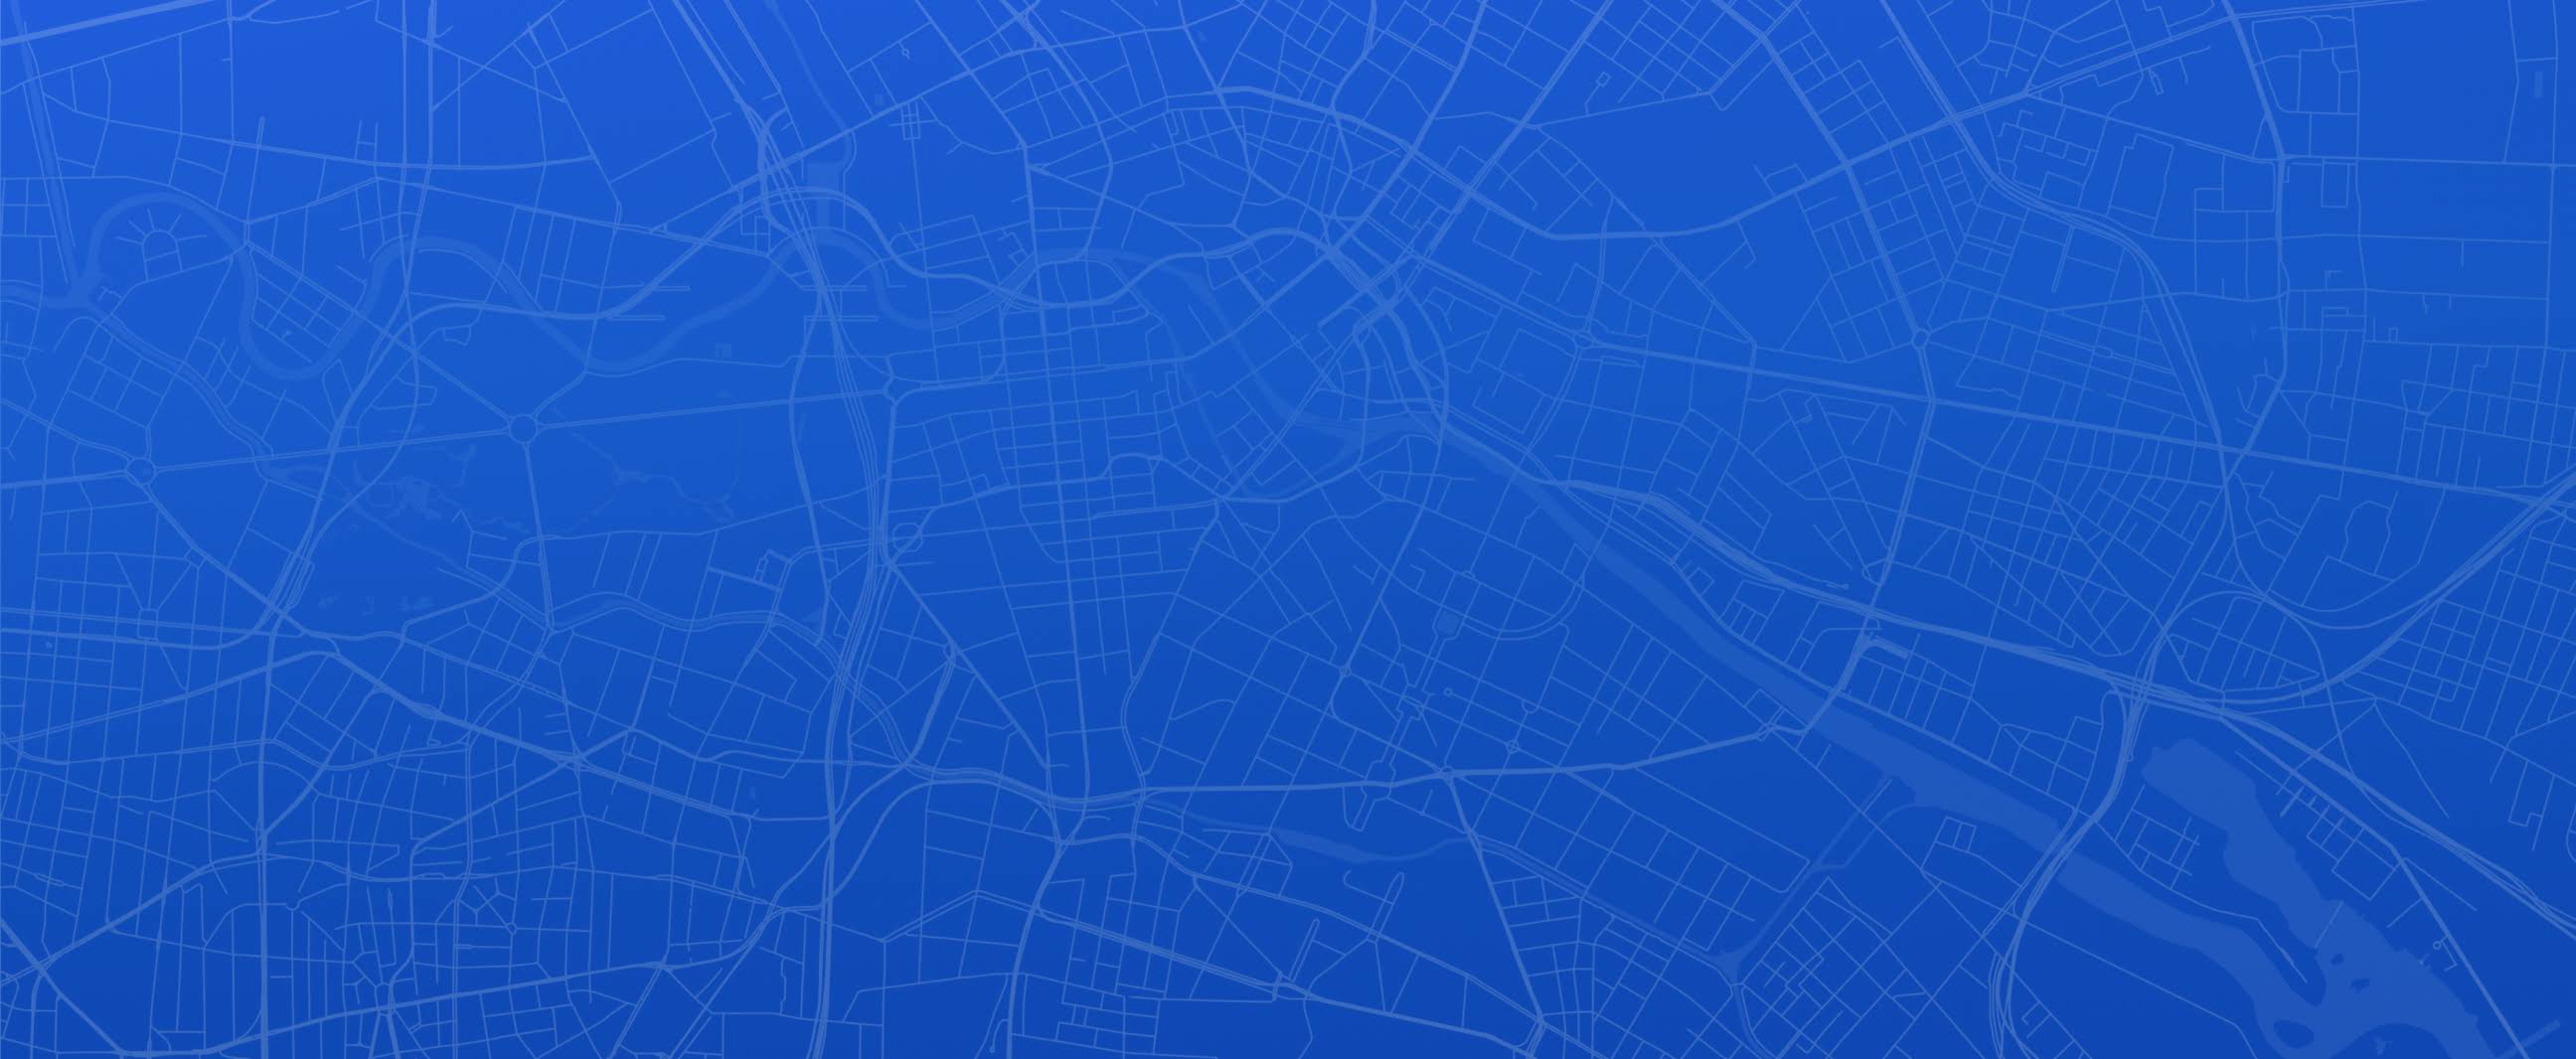 Una mappa blu e bianca di una città